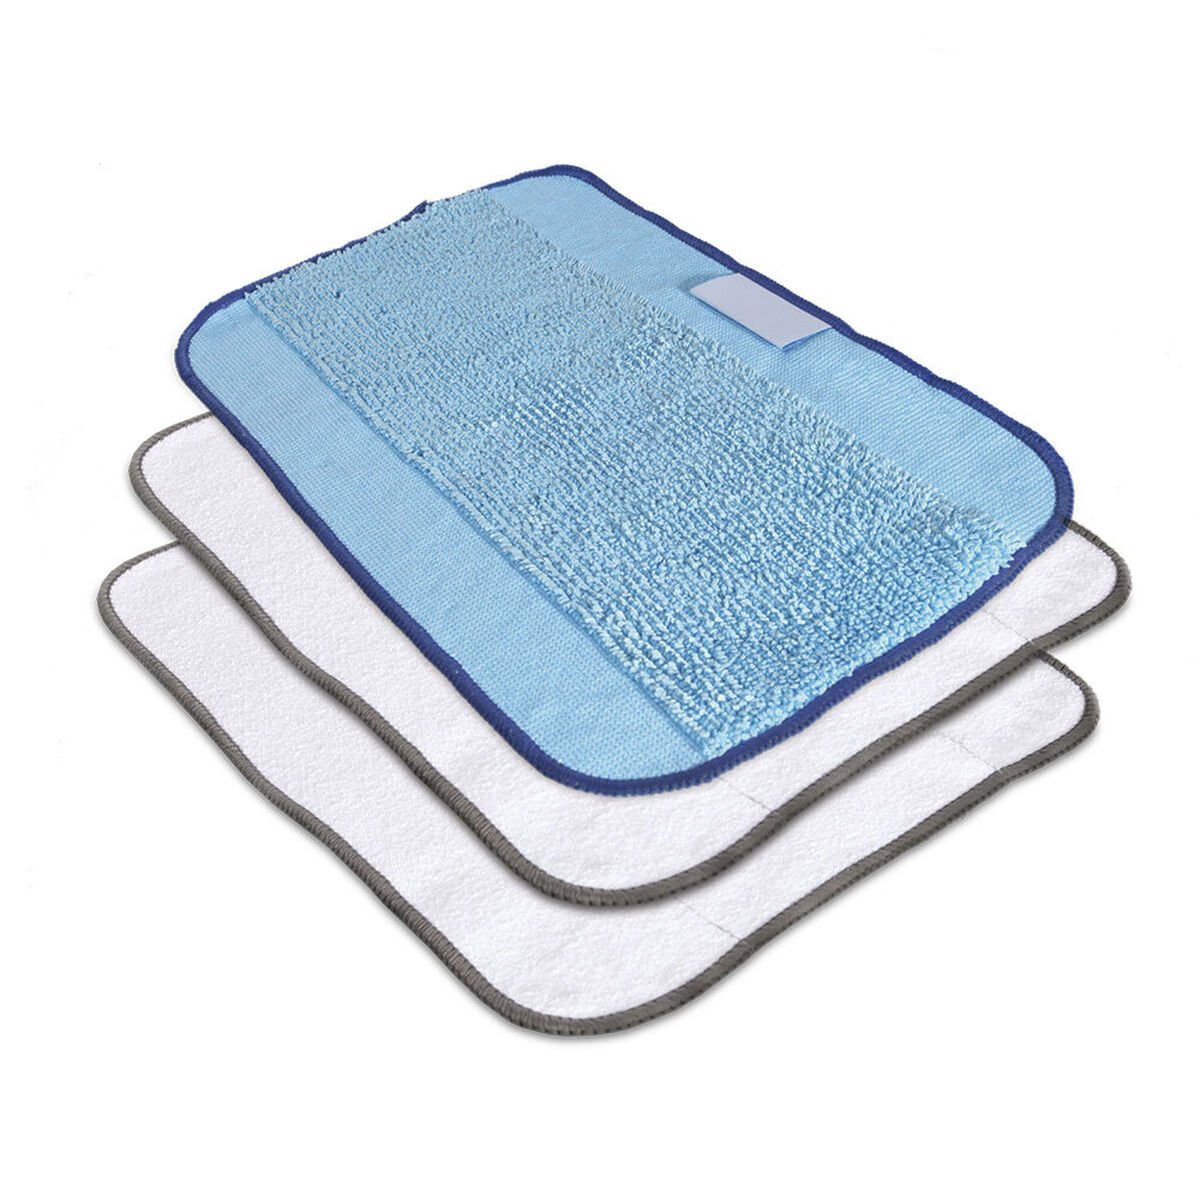 Lingettes de nettoyage en microfibre, emballage mixte de 3, , large image number 0